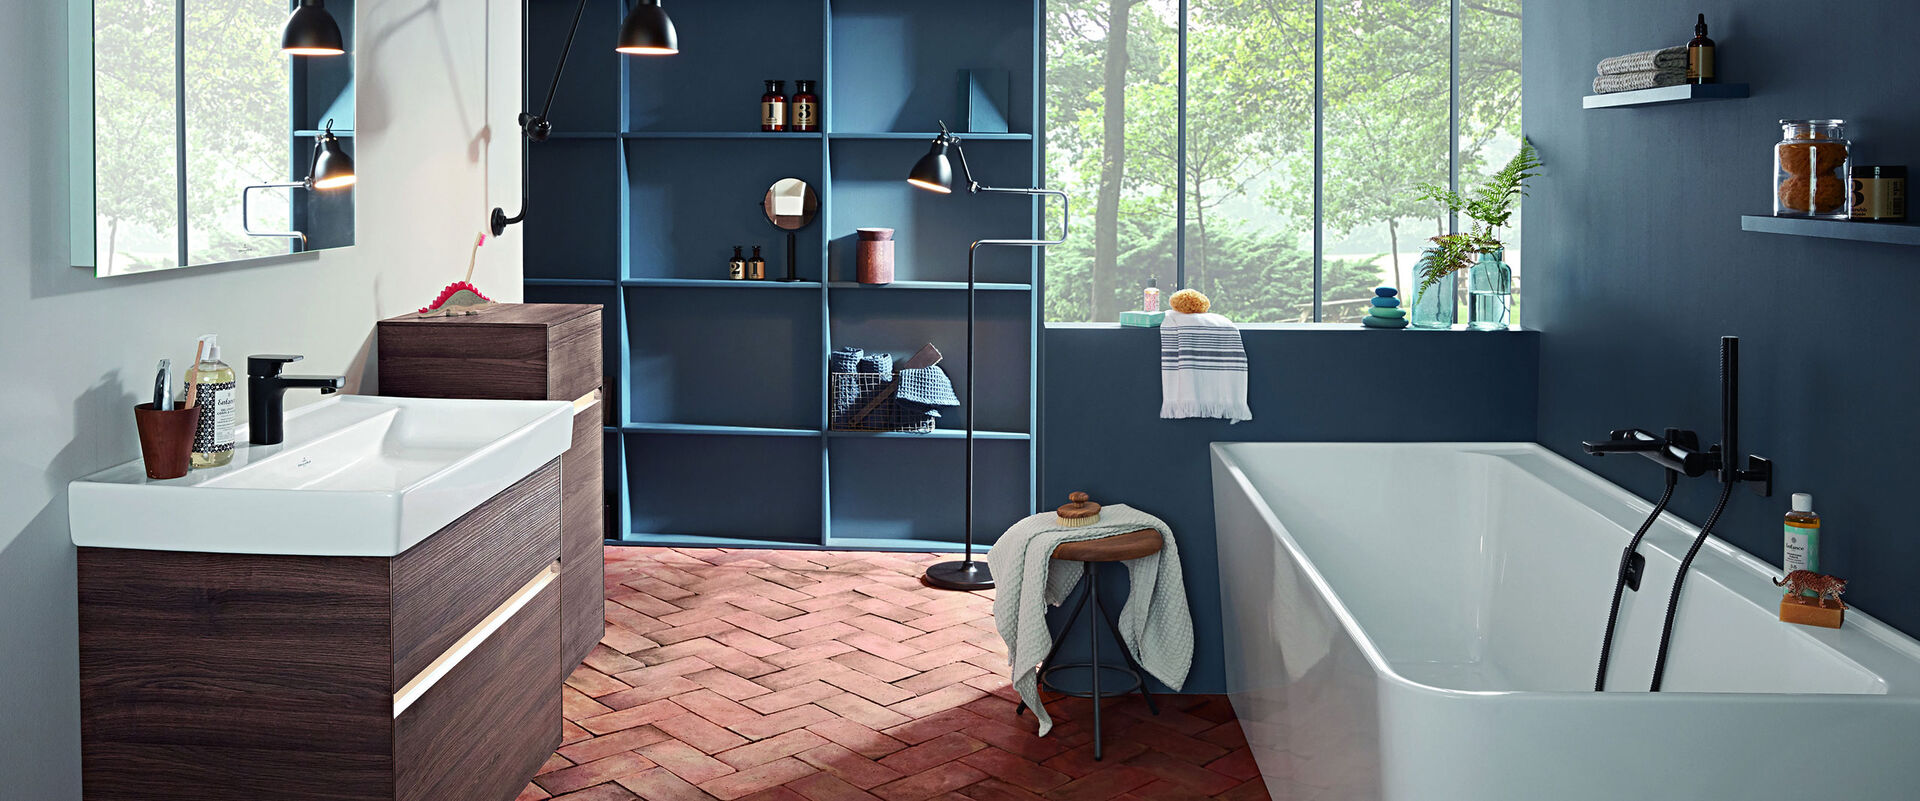 Traumbad von Villeroy & Boch: Collaro bietet zeitlos schöne Produkte für Ihr Zuhause – edle Badmöbel, pflegeleichte Keramik-Waschtische und WCs und eine Badewanne für entspannte Stunden zu Hause.